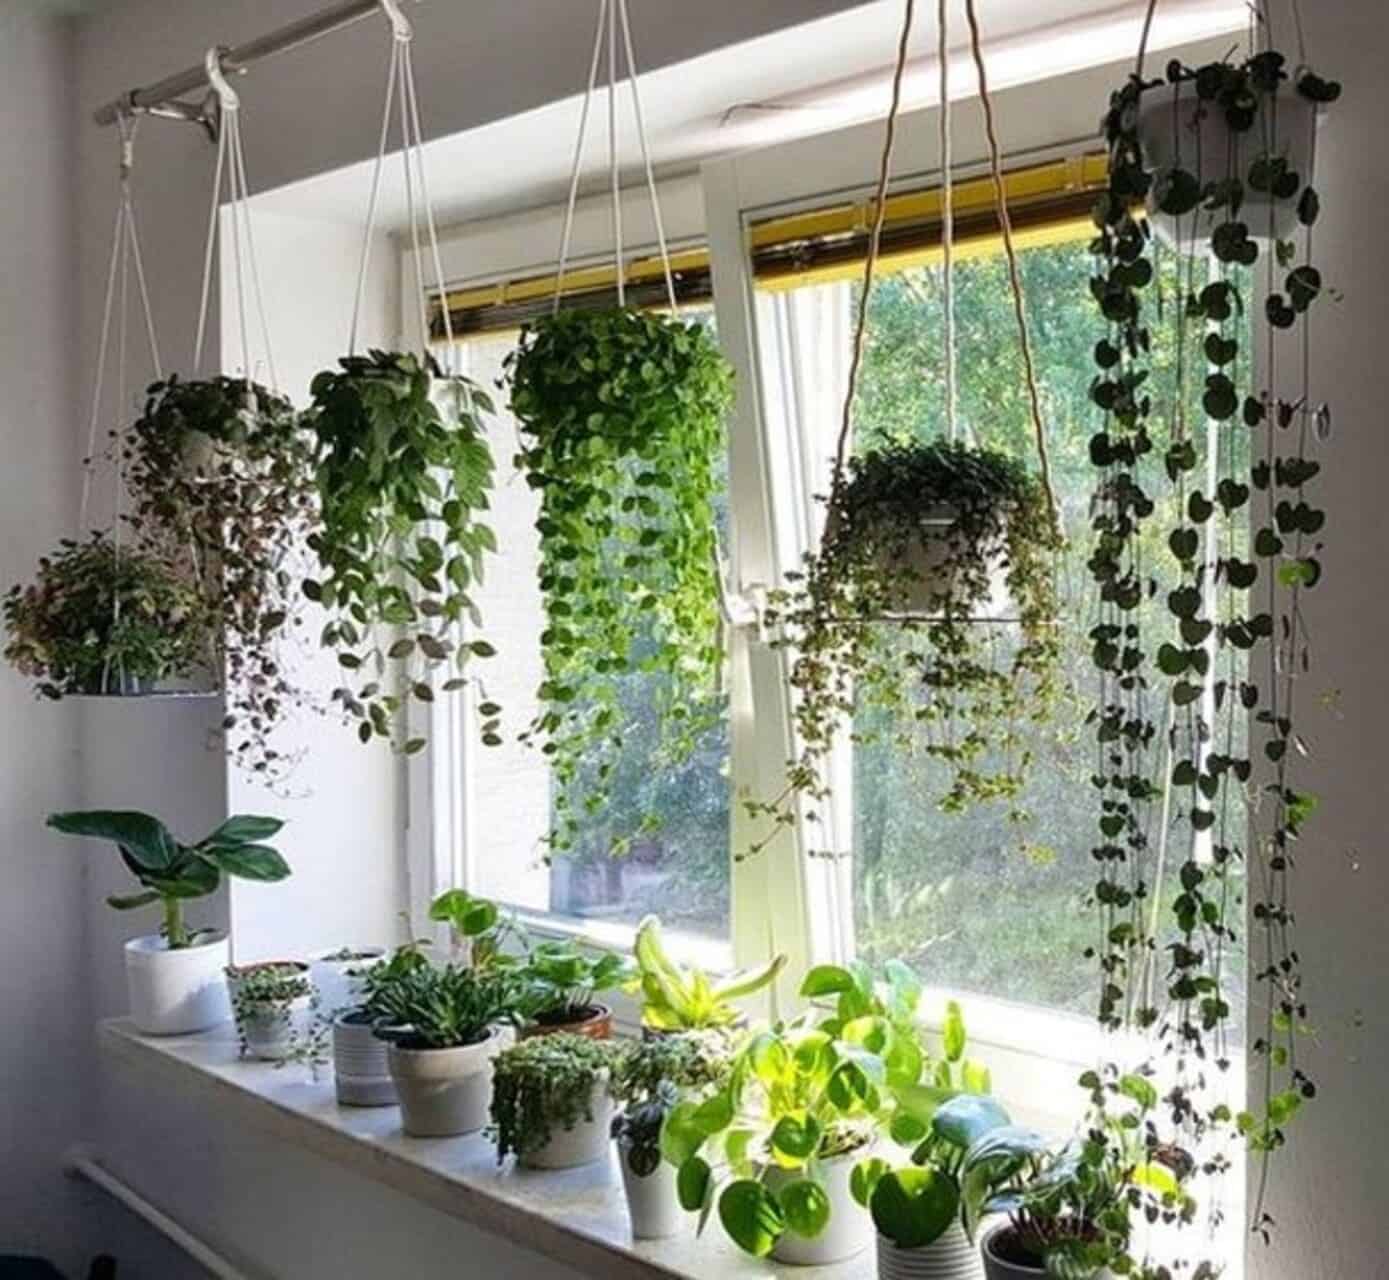 Plantas pendentes: um toque de verde e frescor para ambientes internos